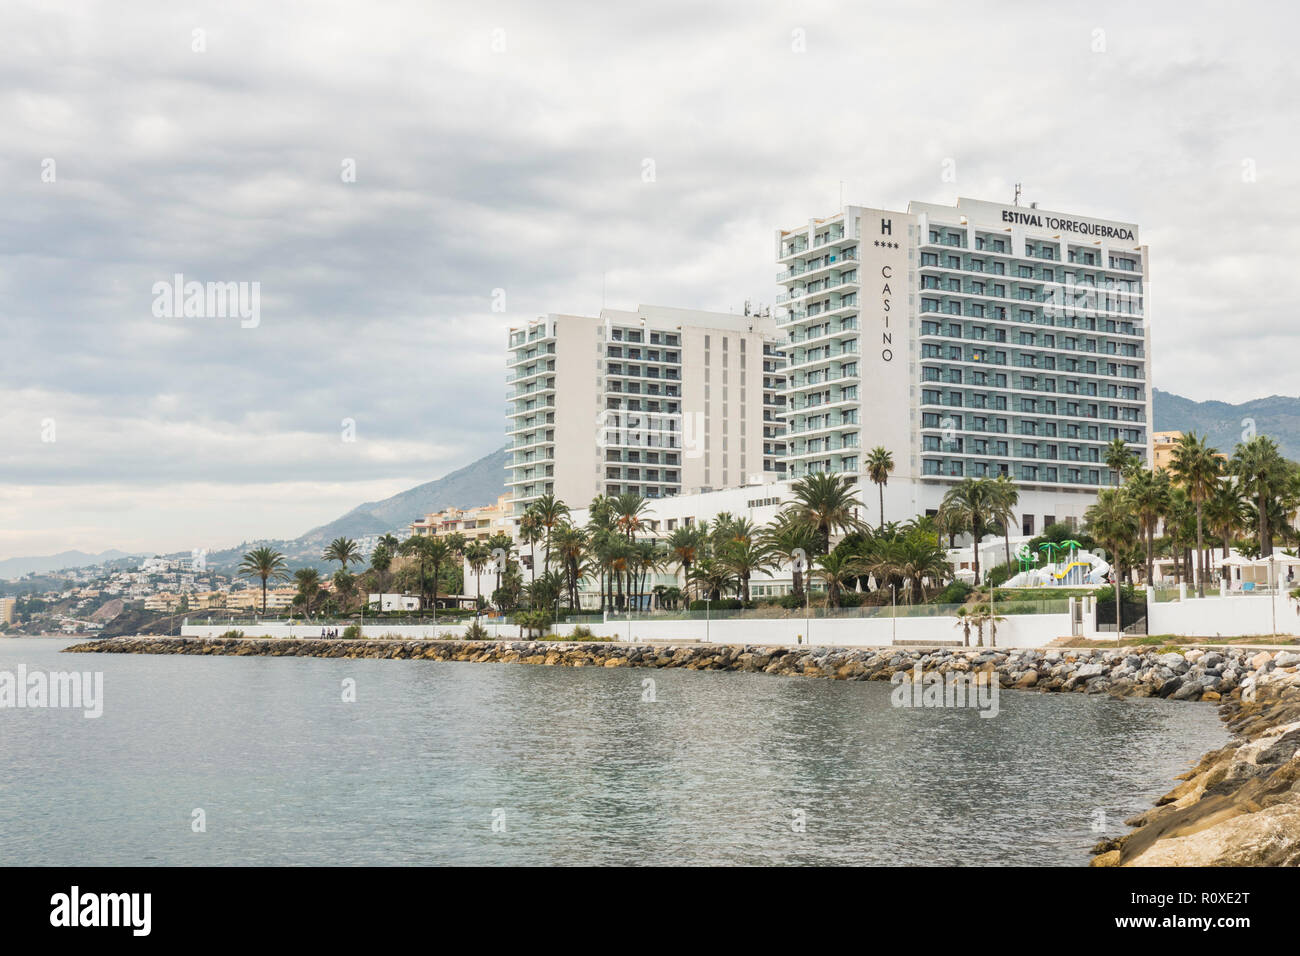 Hotel casino torrequebrada fotografías e imágenes de alta resolución - Alamy